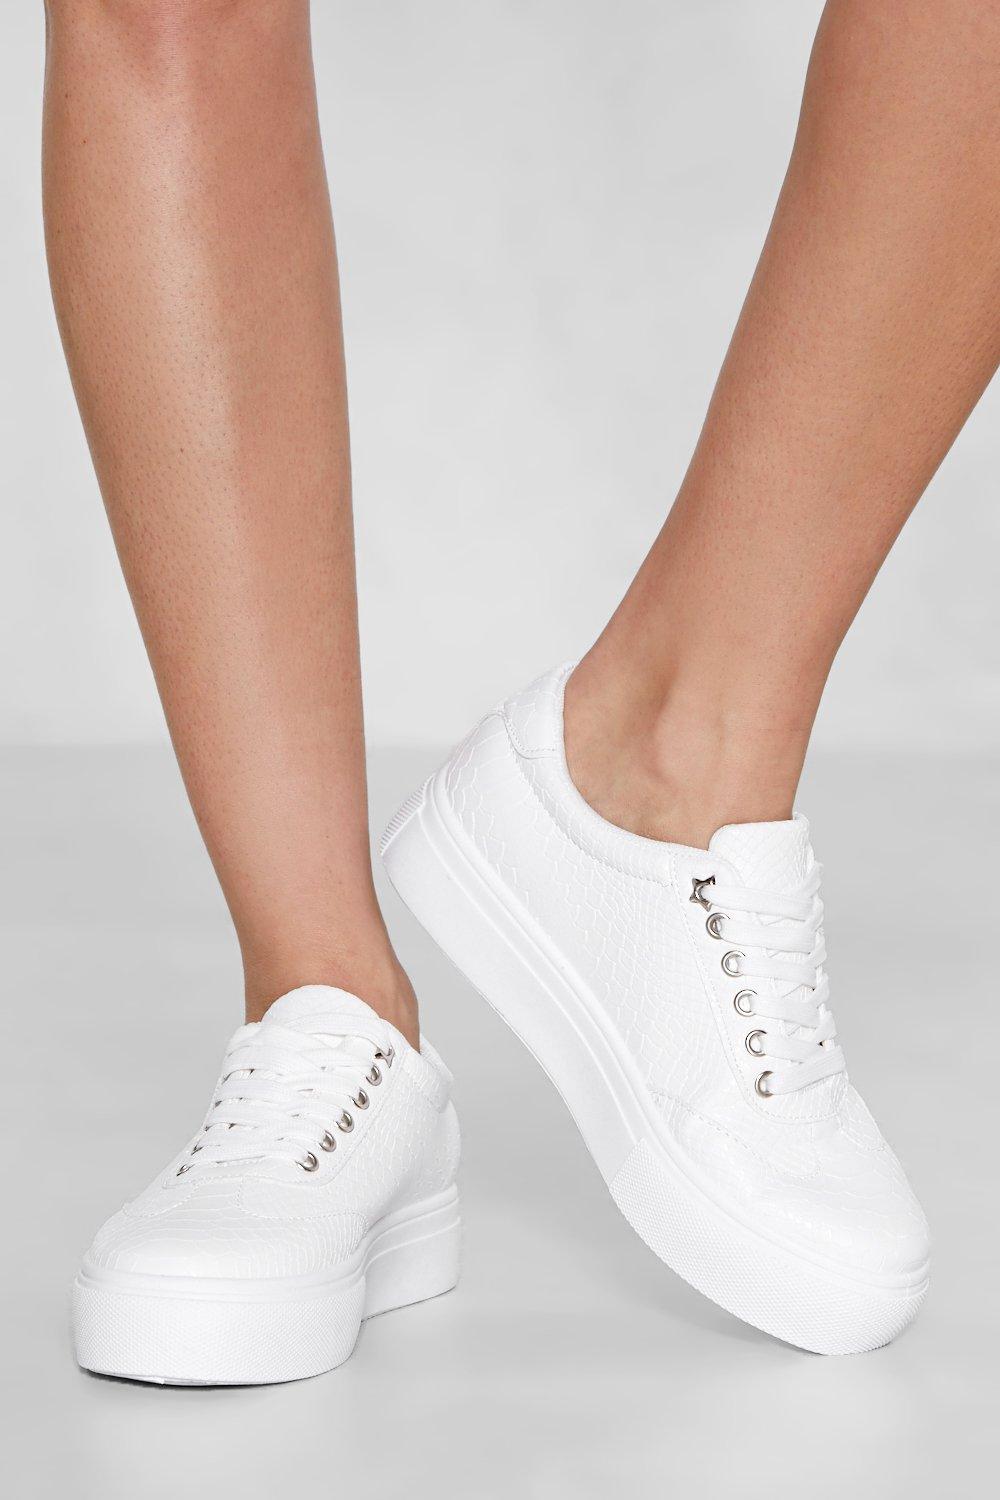 slip on white platform sneakers